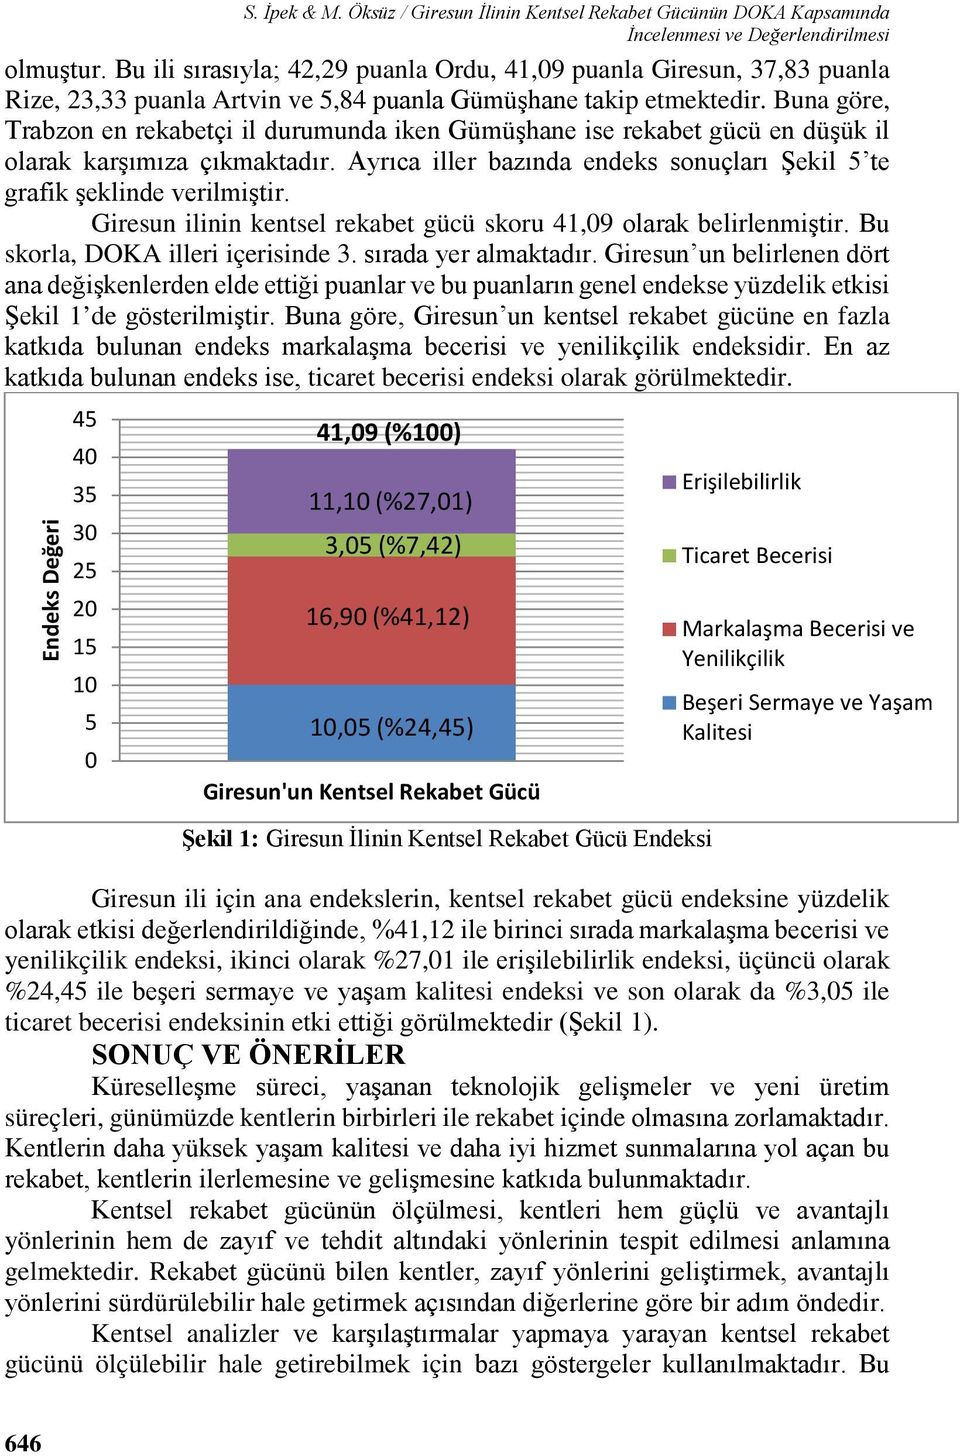 Buna göre, Trabzon en rekabetçi il durumunda iken Gümüşhane ise rekabet gücü en düşük il olarak karşımıza çıkmaktadır. Ayrıca iller bazında endeks sonuçları Şekil te grafik şeklinde verilmiştir.